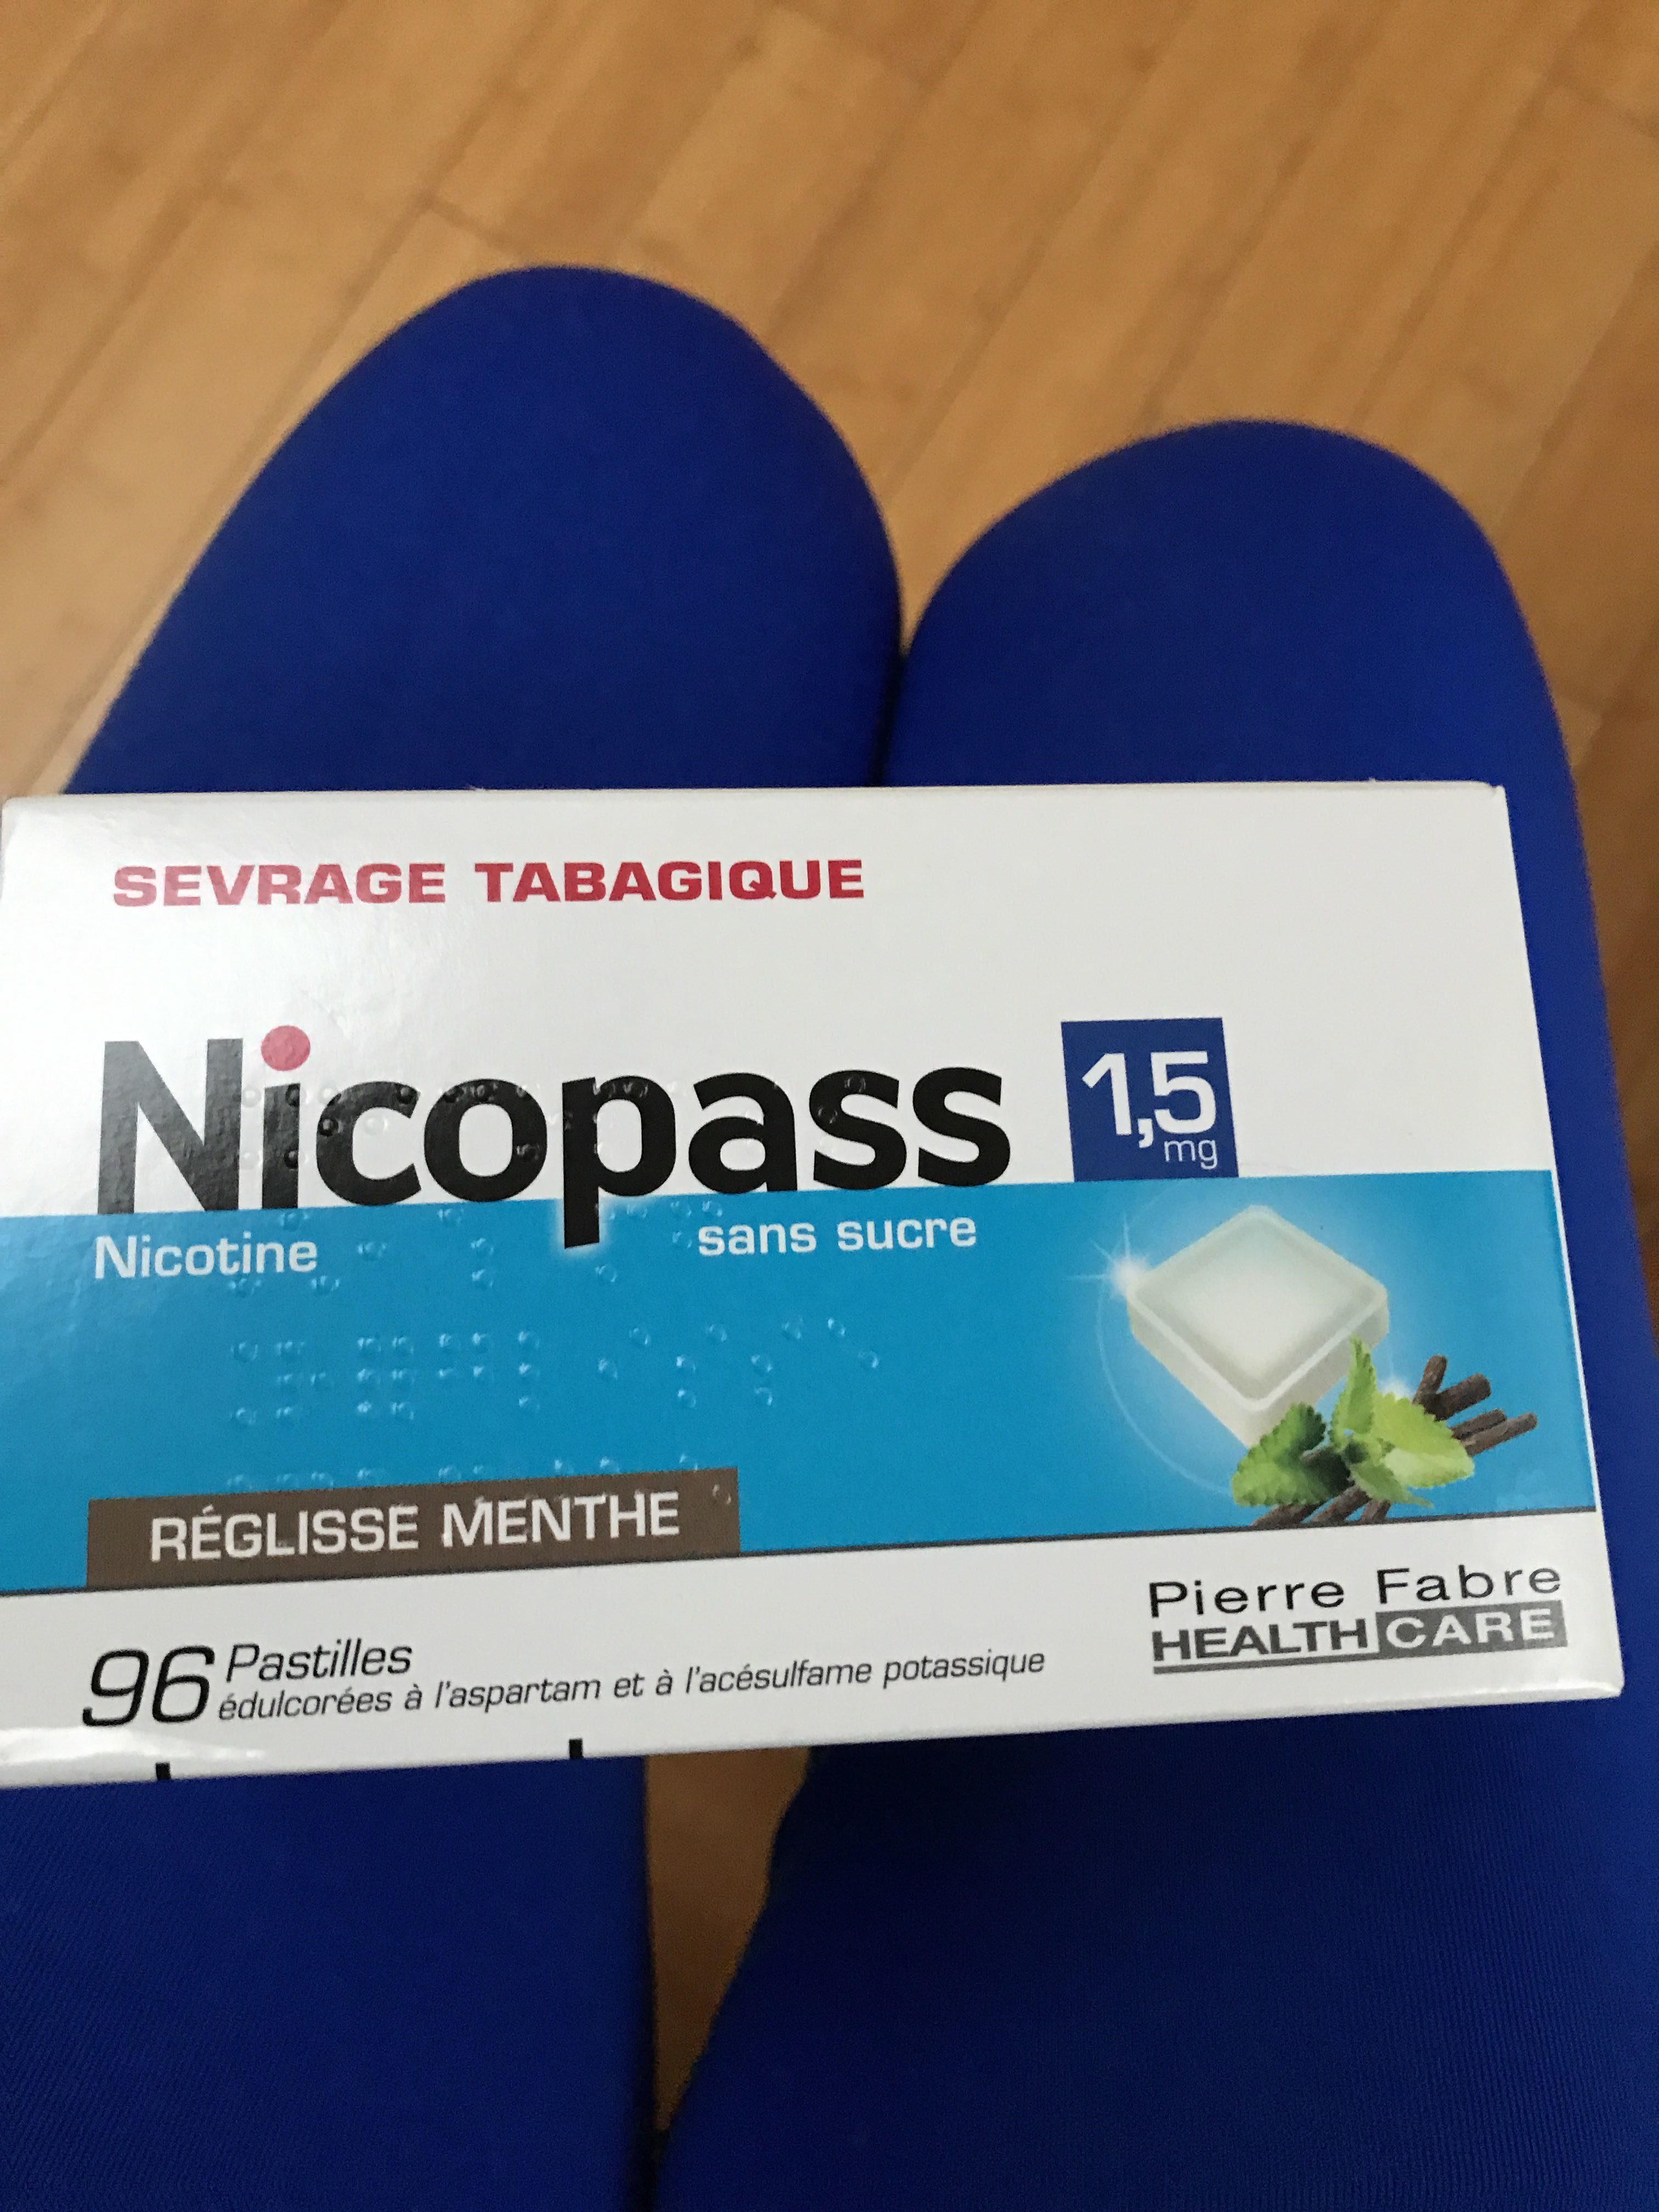 Nicolas 1,5 mg - Tuote - fr